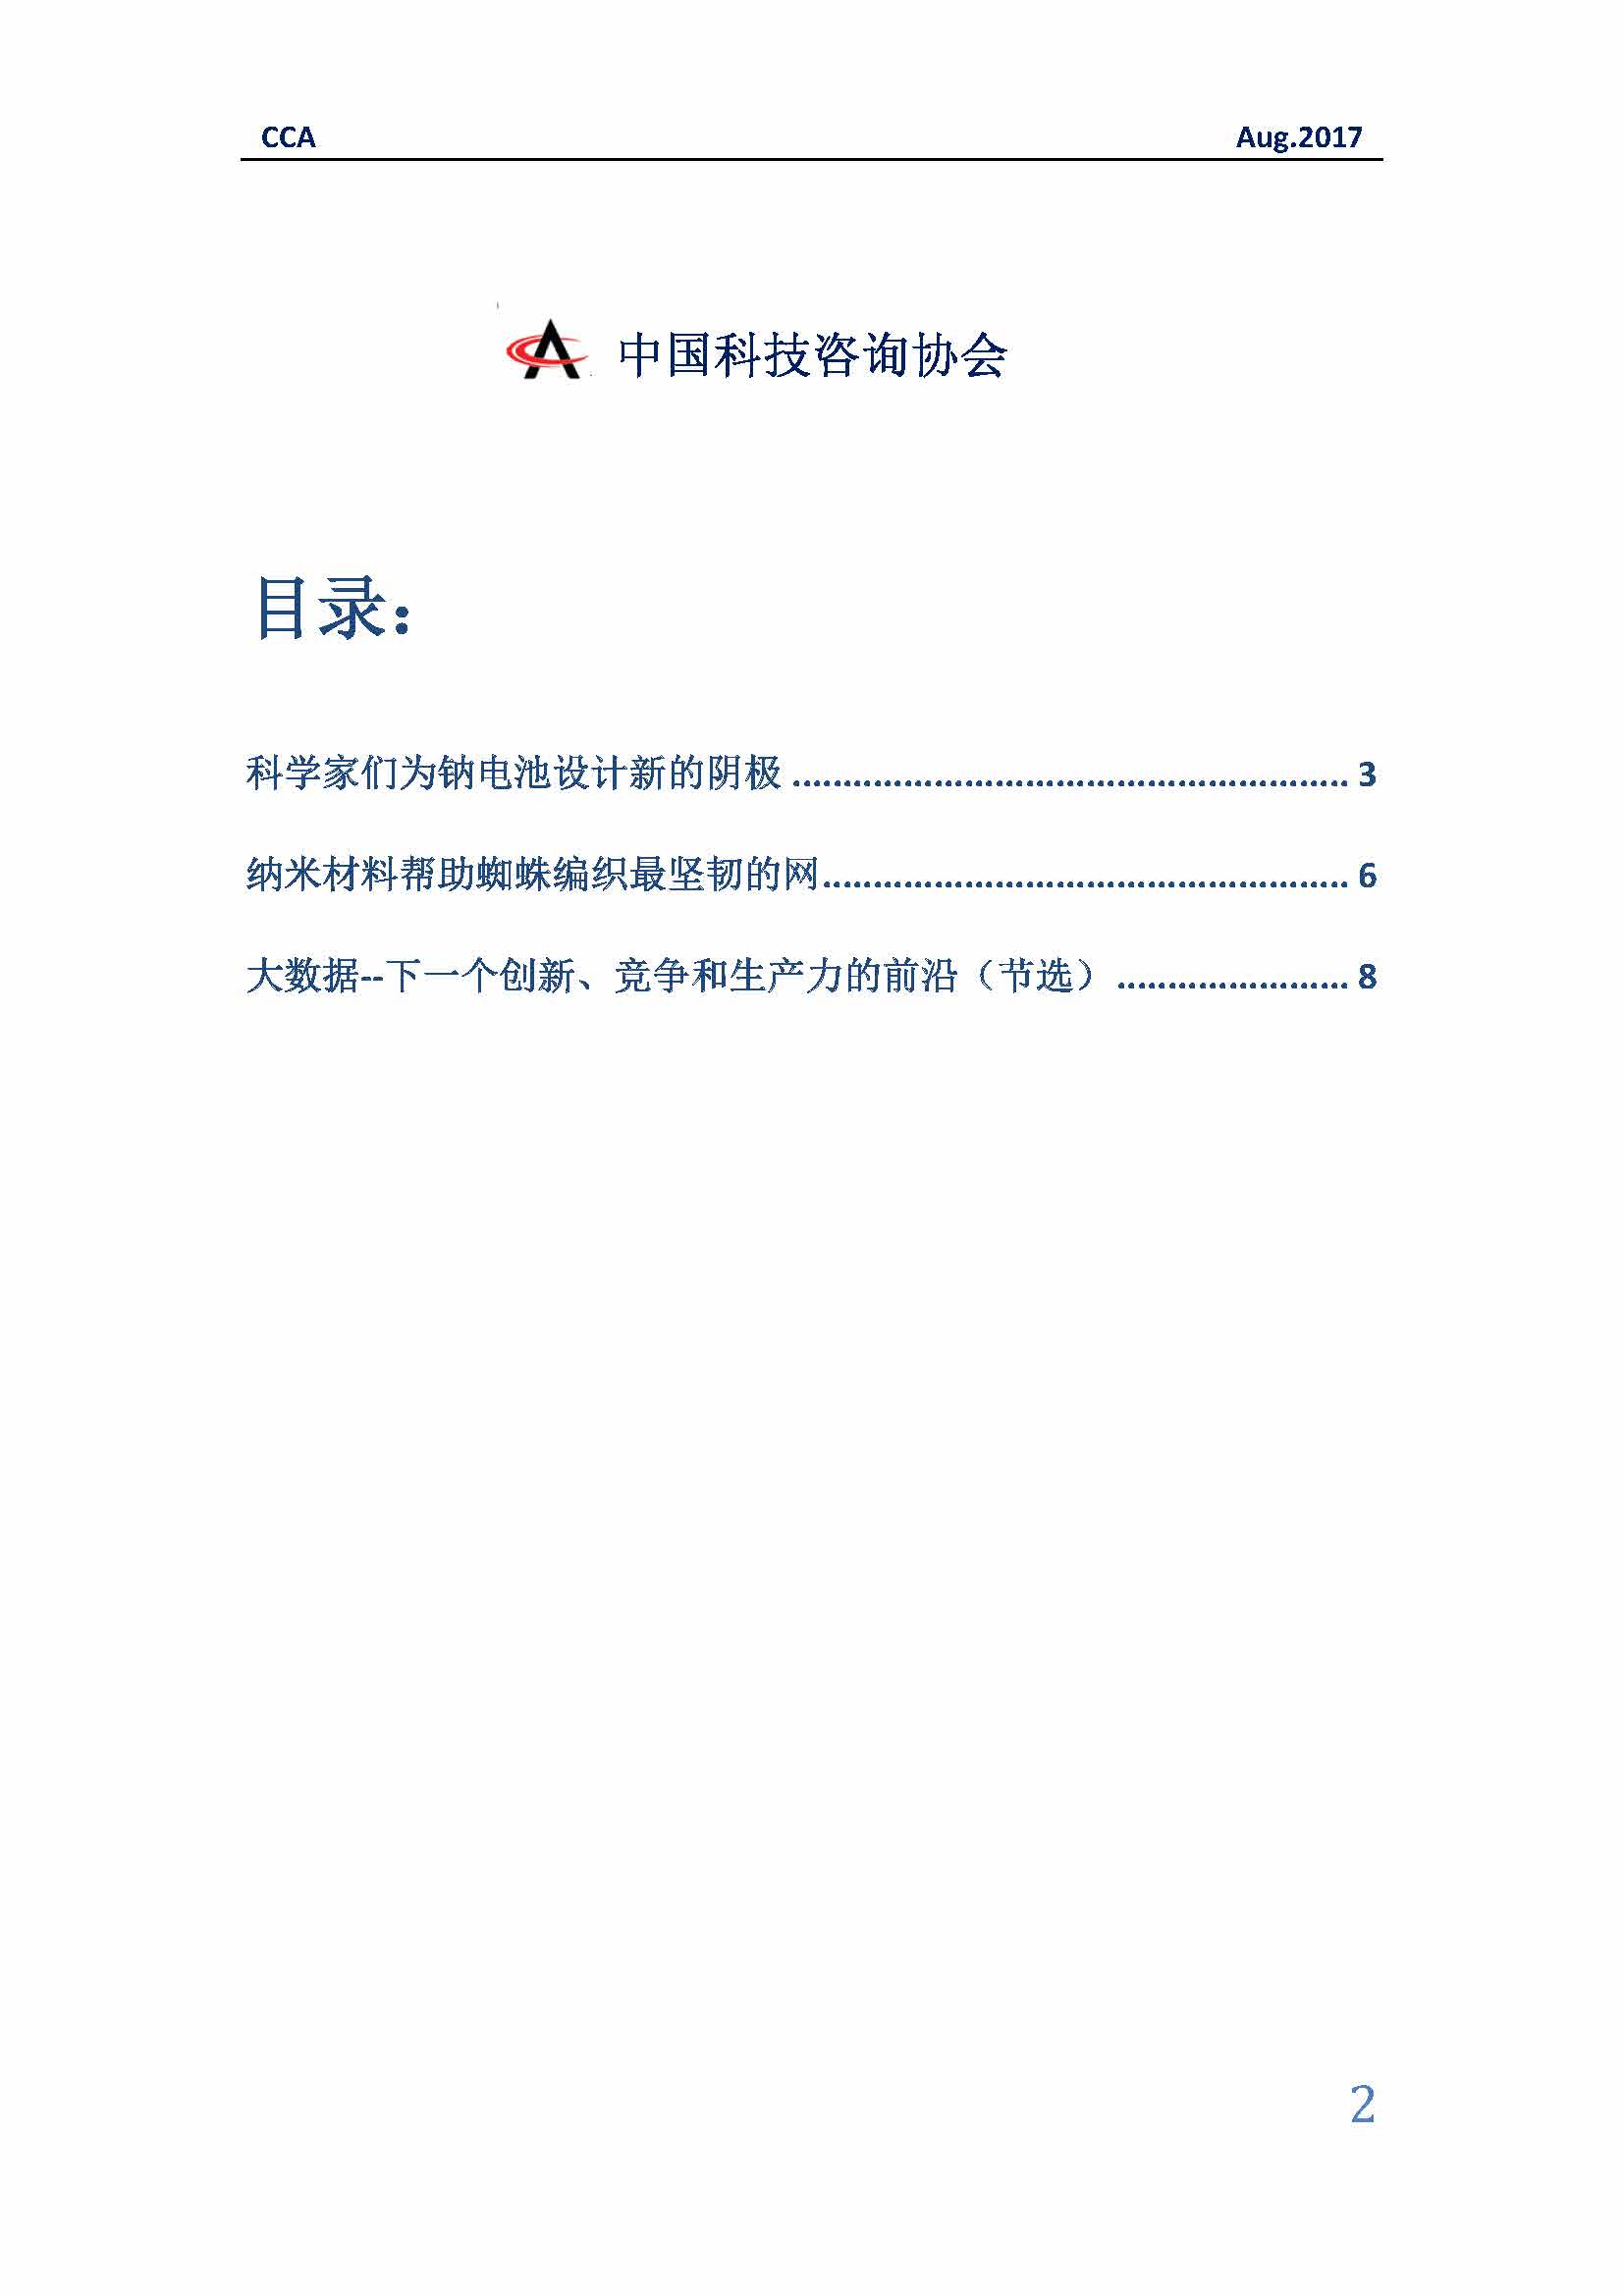 中国科技咨询协会国际快讯（第二十九期）_页面_02.jpg